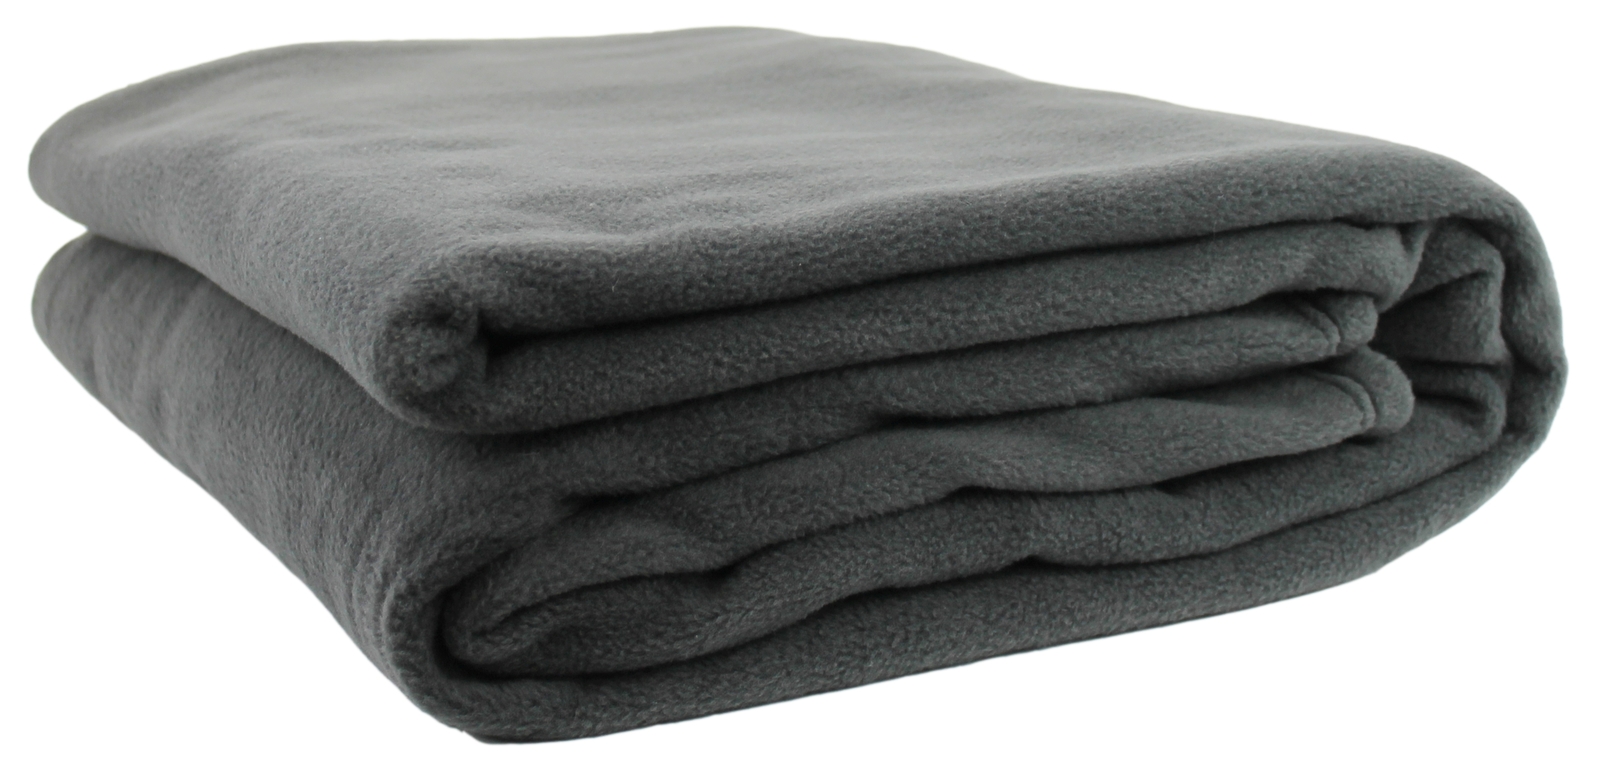 Polar Fleece Blankets: The Ideal Choice for all Your Needs